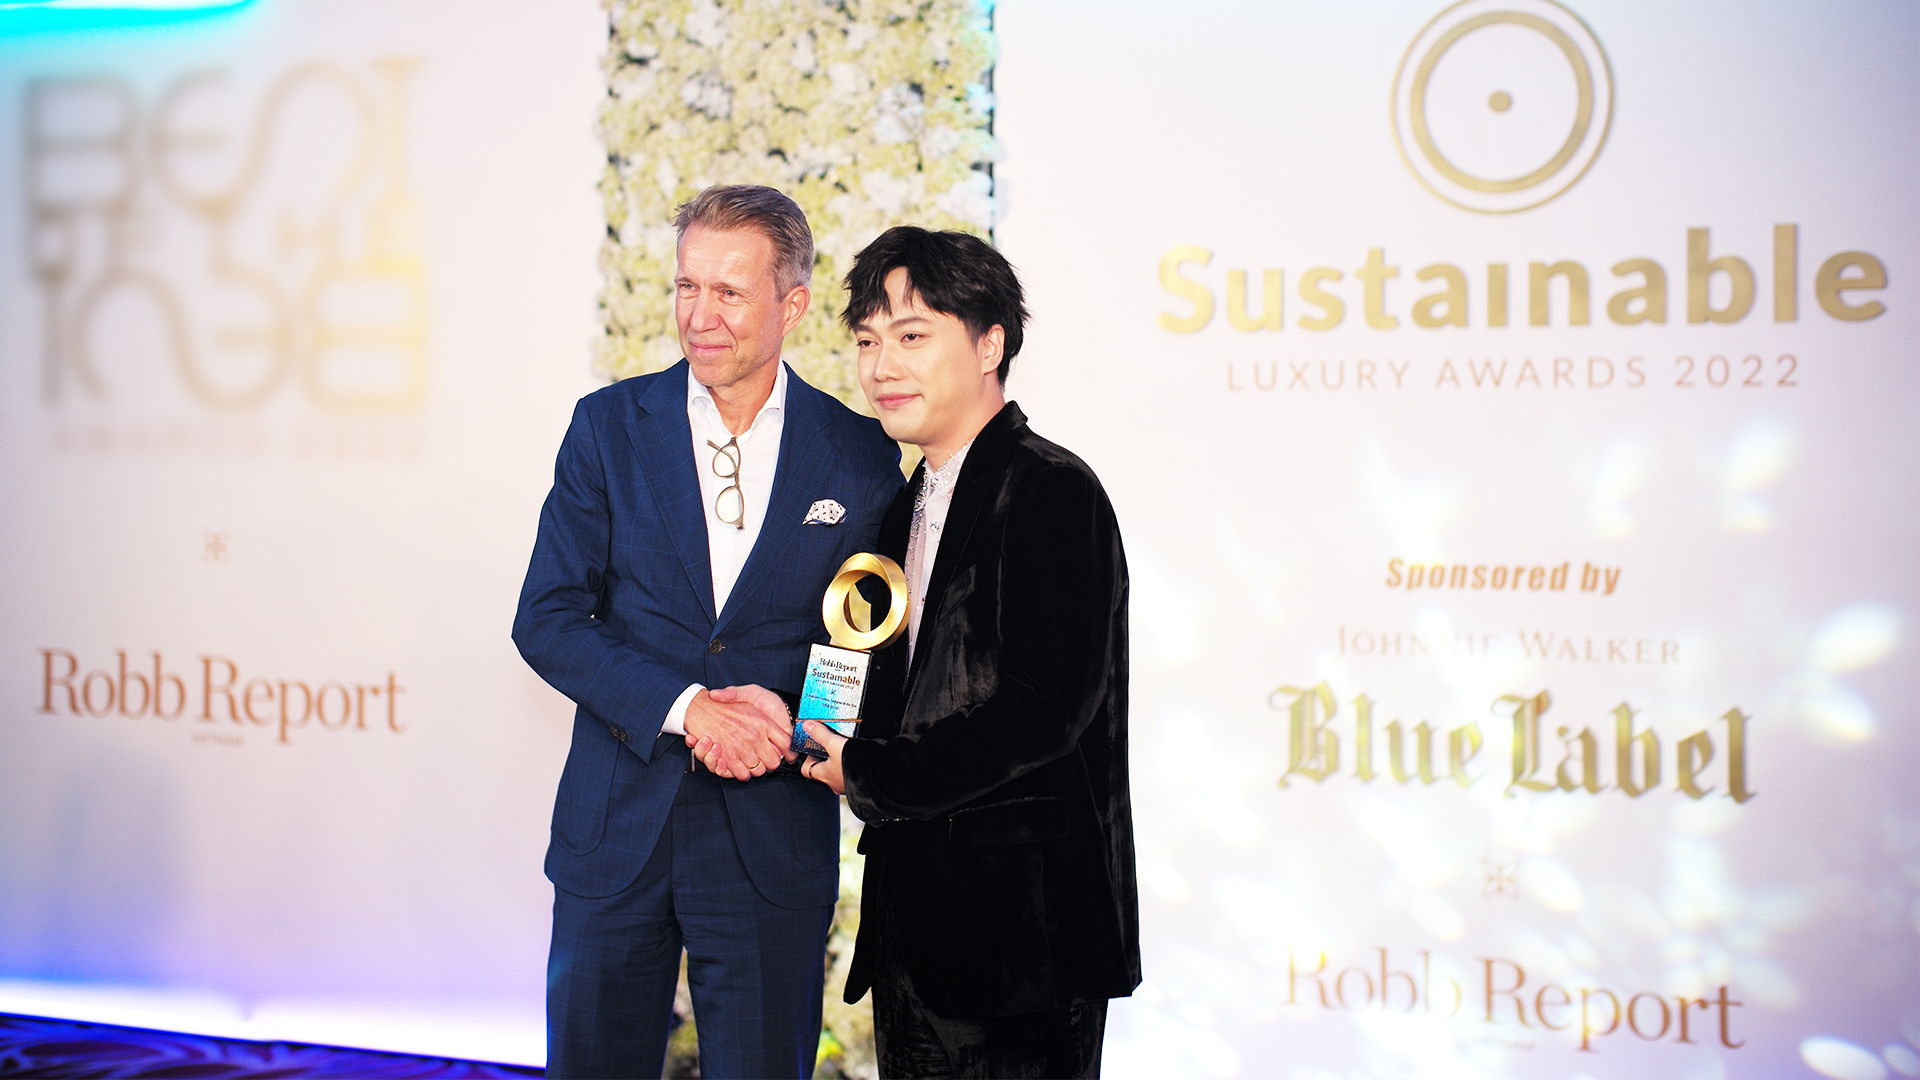 Nhà thiết kế Trần Hùng được vinh danh ở hạng mục Sustainable Fashion Designer of the Year cho những sáng kiến của anh về chất liệu thời trang bền vững.